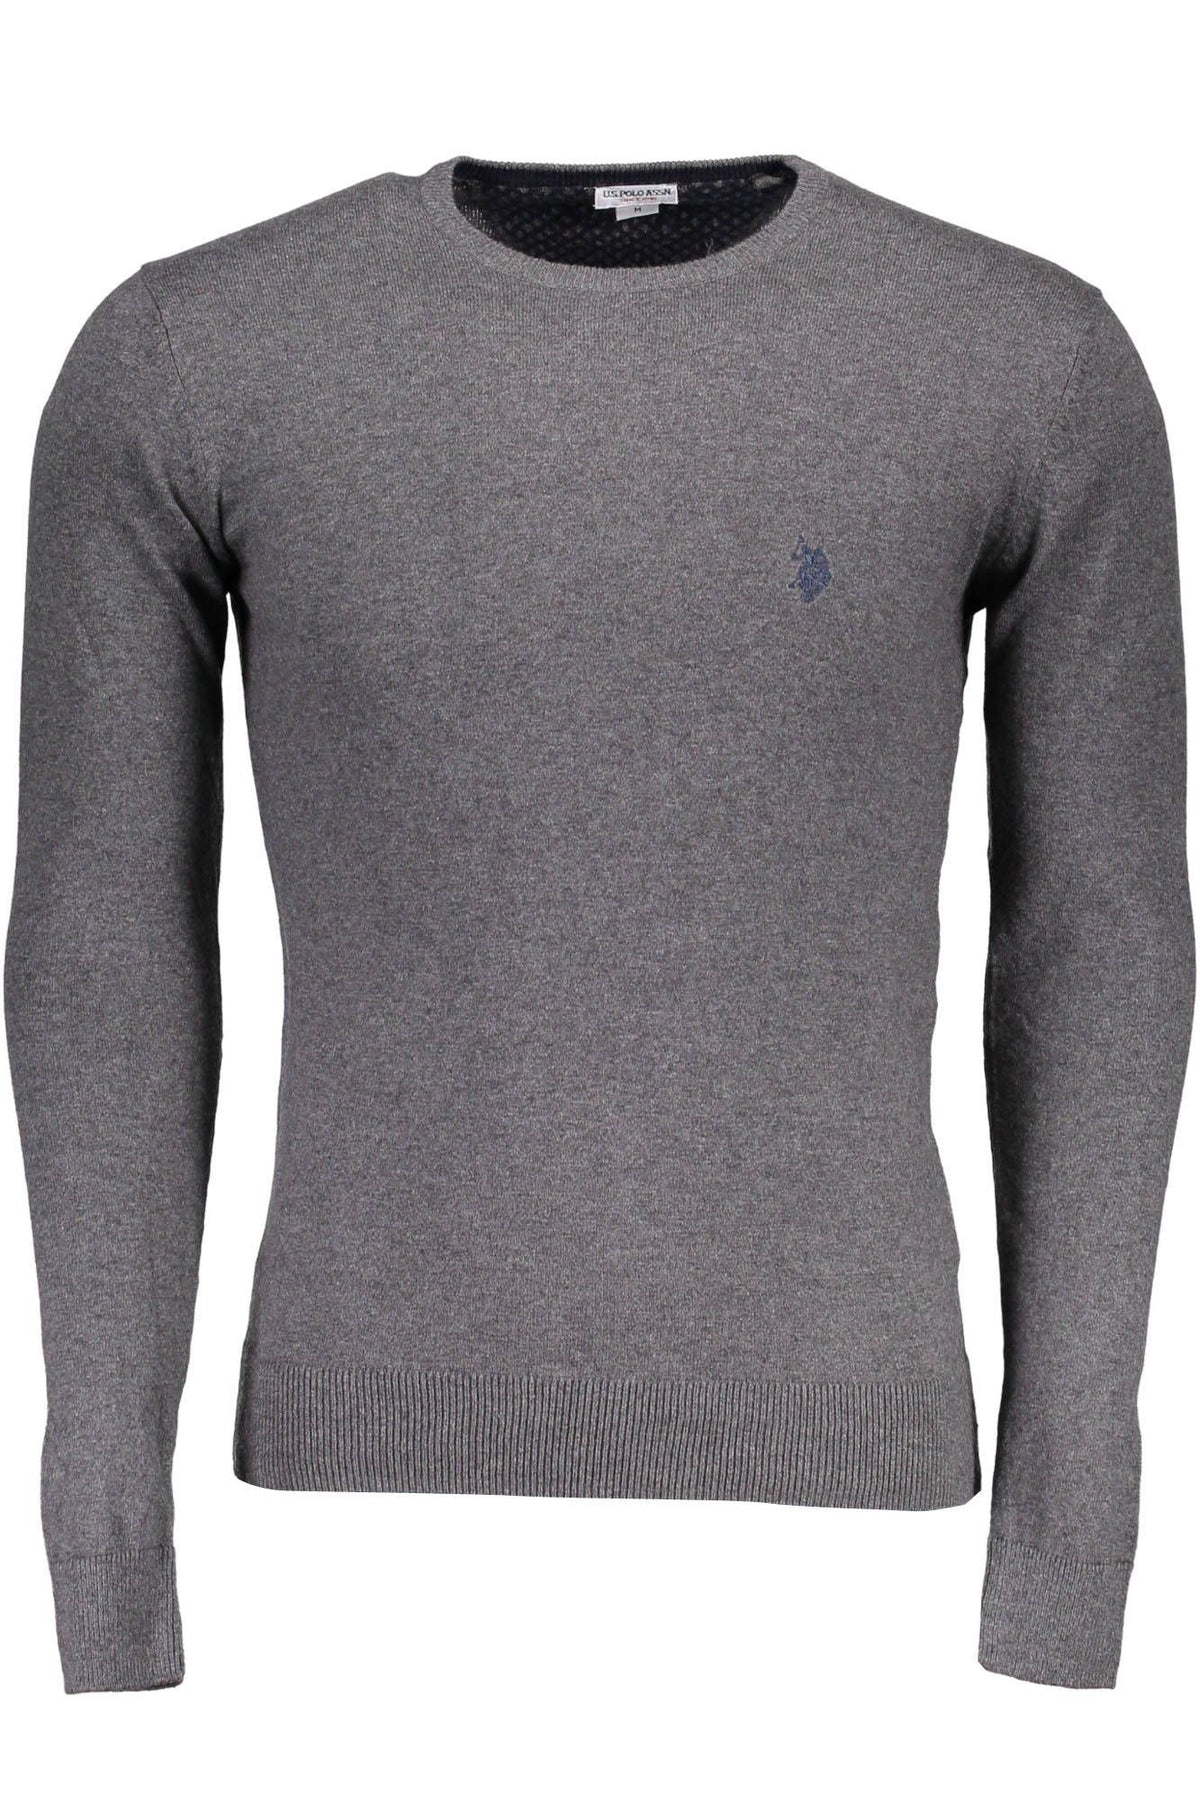 U.S. Polo Assn. Herren Pullover Sweatshirt mit Rundhalsausschnitt, langarm